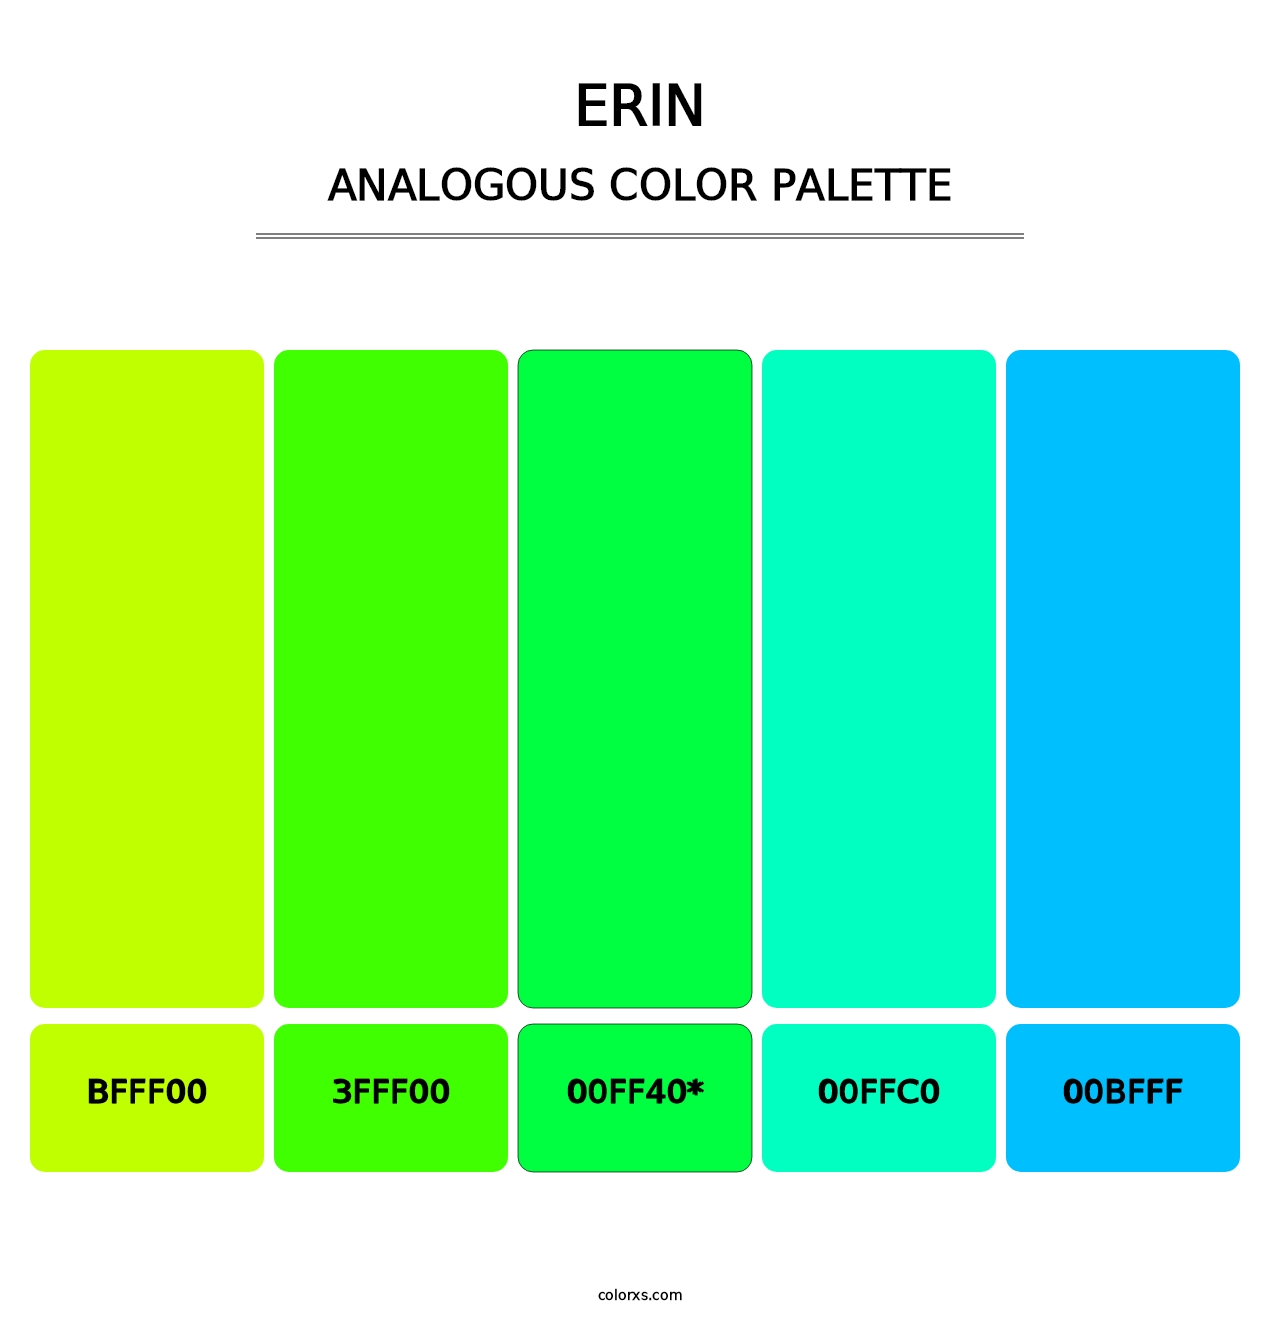 Erin - Analogous Color Palette